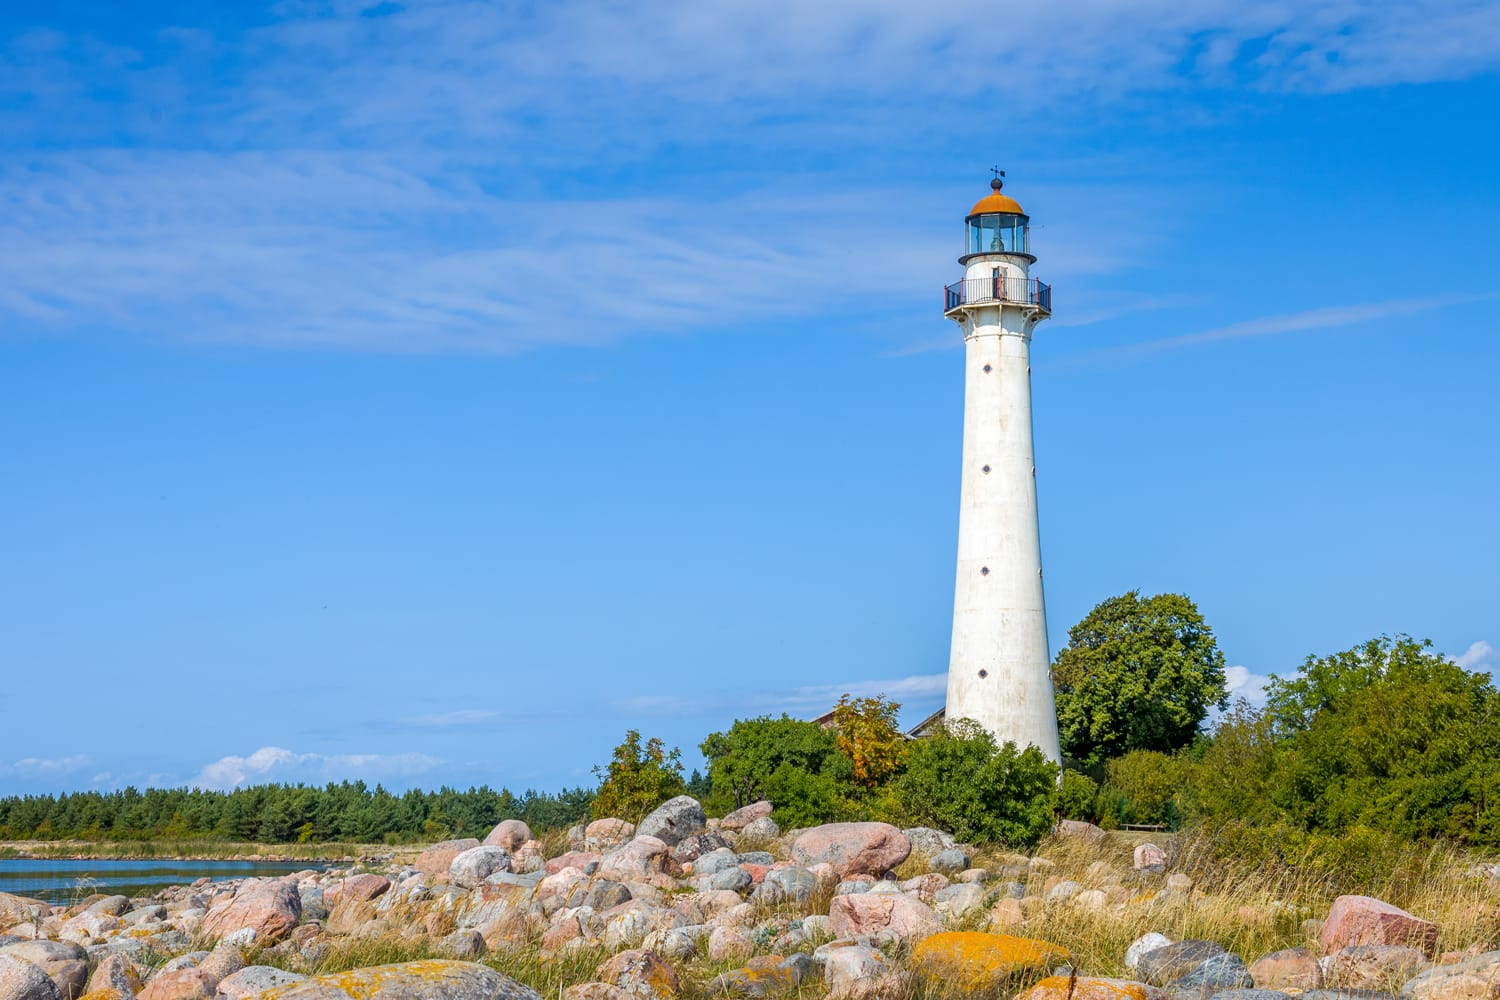 Kihnu island lighthouse in Estonia